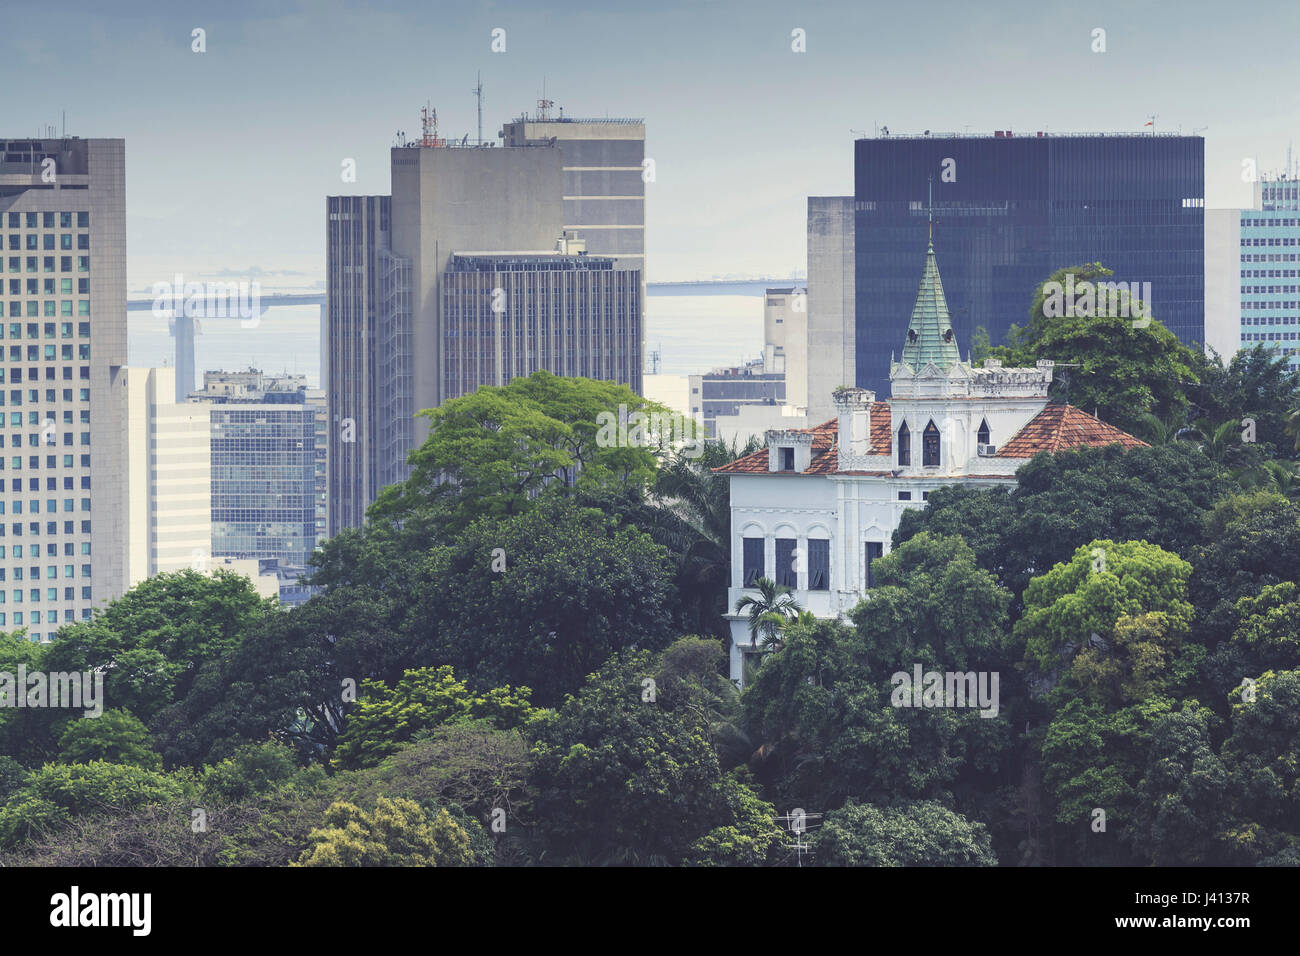 View of Rio city centre from Santa Teresa suburb, Rio de Janeiro, Brazil Stock Photo